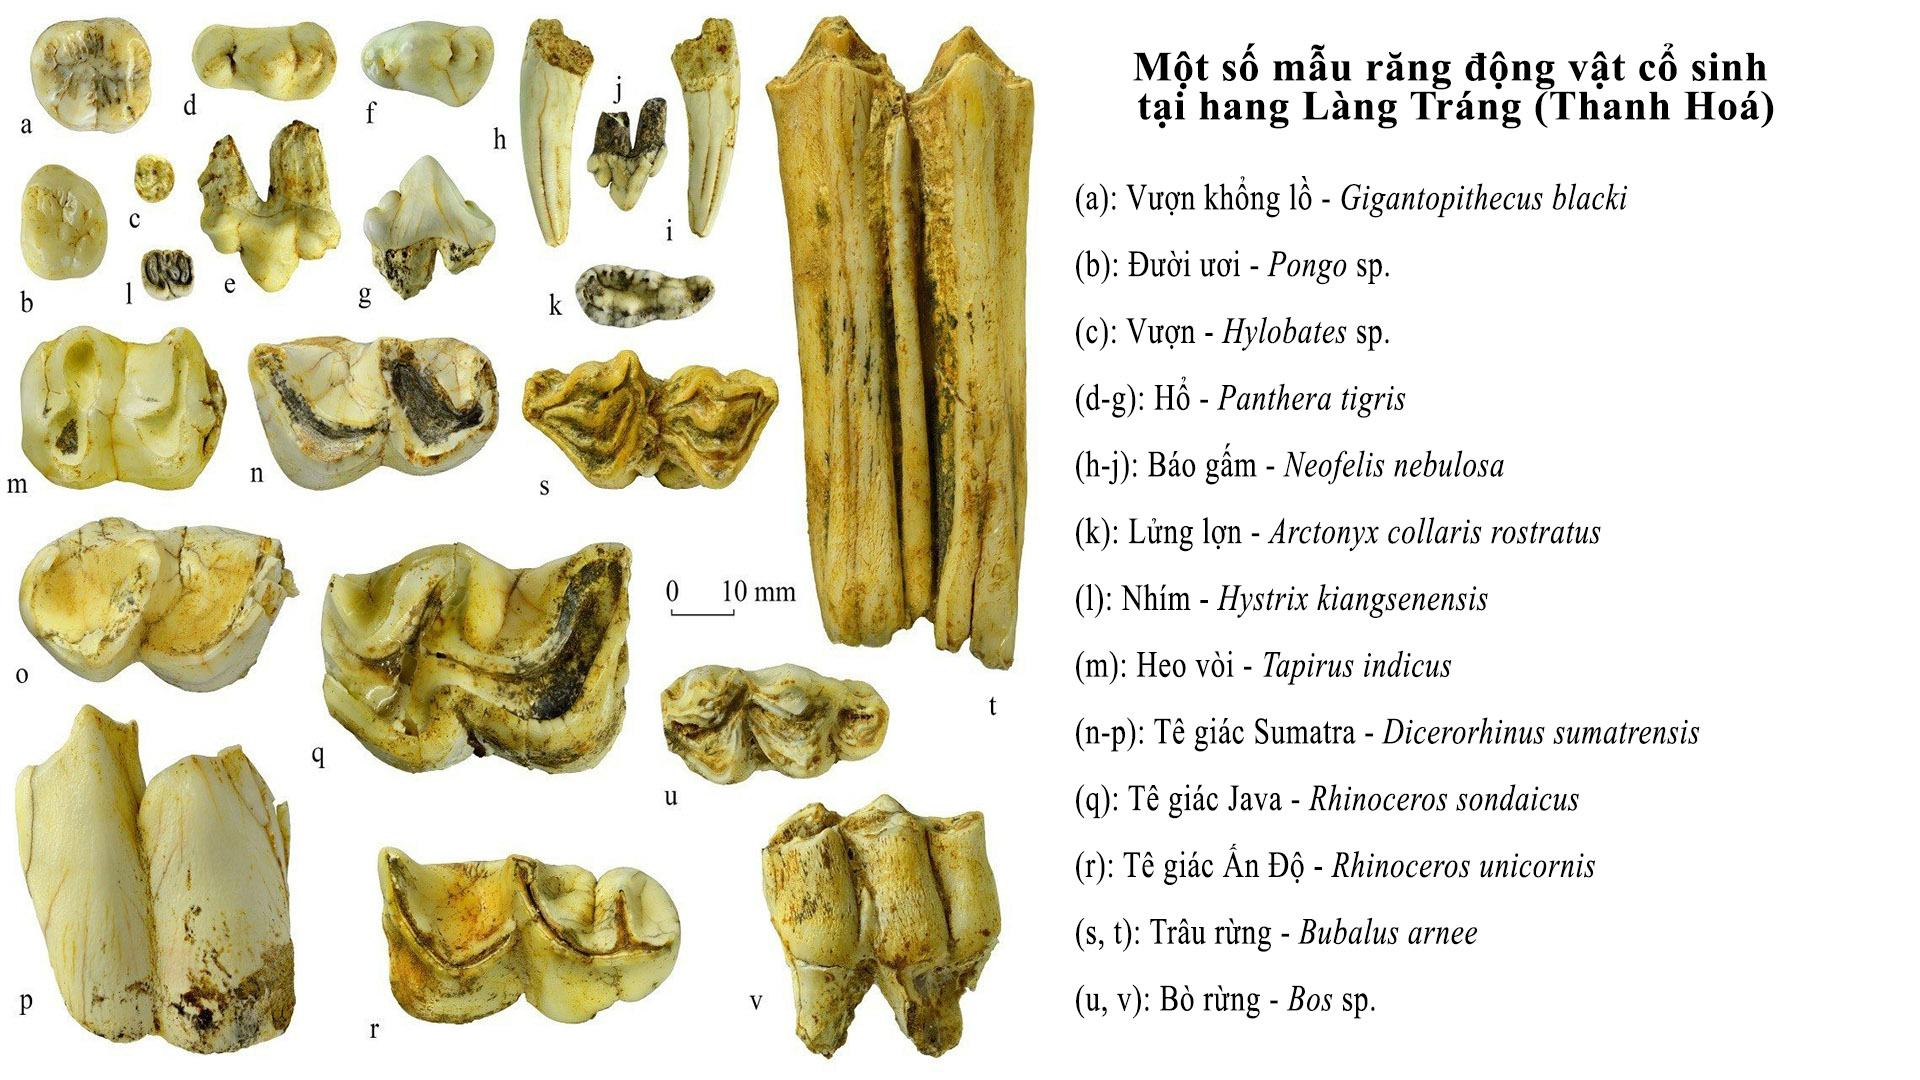 Những phát hiện mới về hệ động vật cổ sinh tại hang Làng Tráng và môi trường sống ở Thế Pleistocene